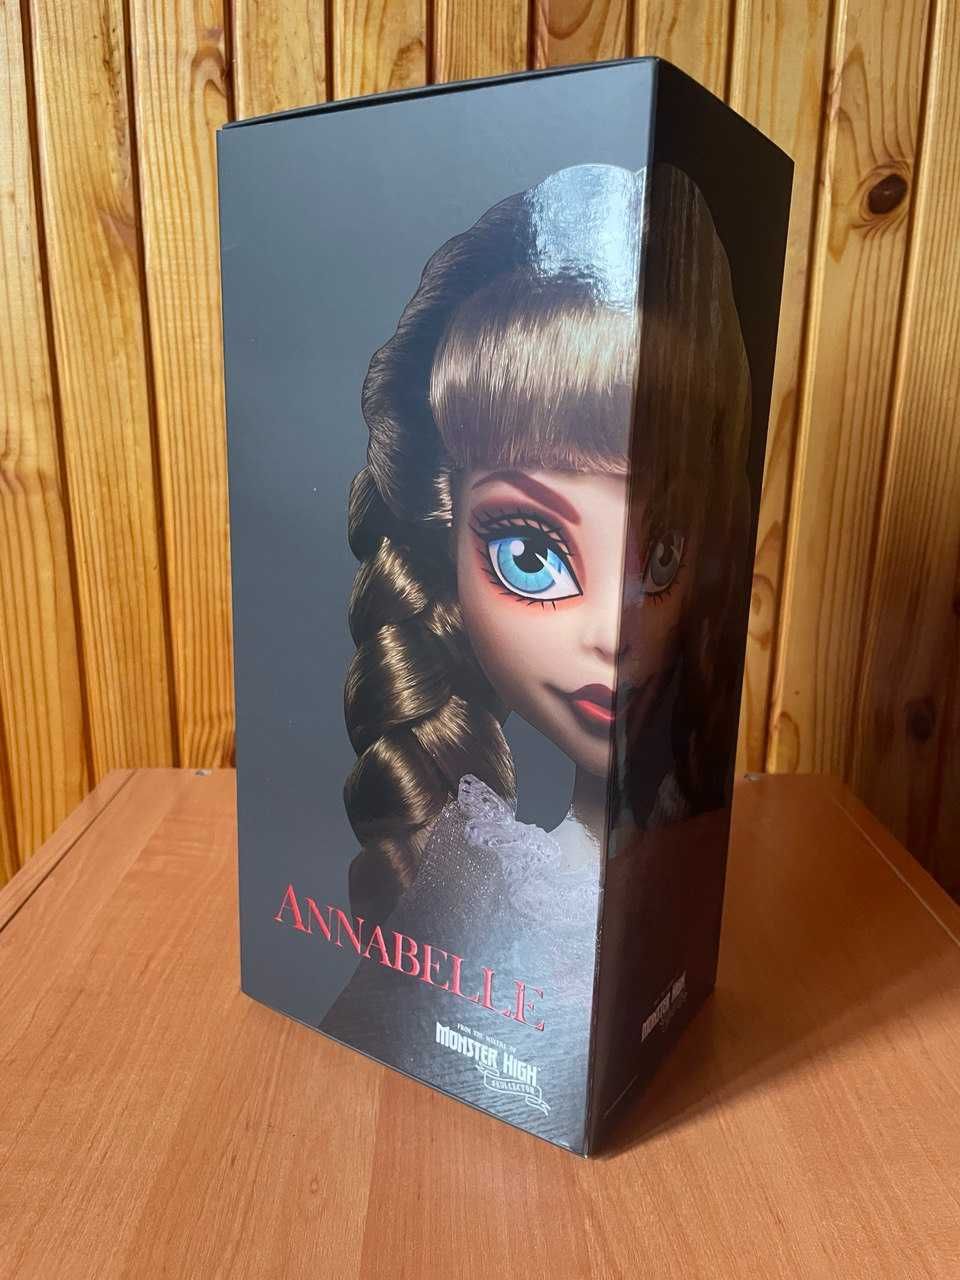 Коллекционная кукла Аннабель Монстер Monster High Skullector Annabelle